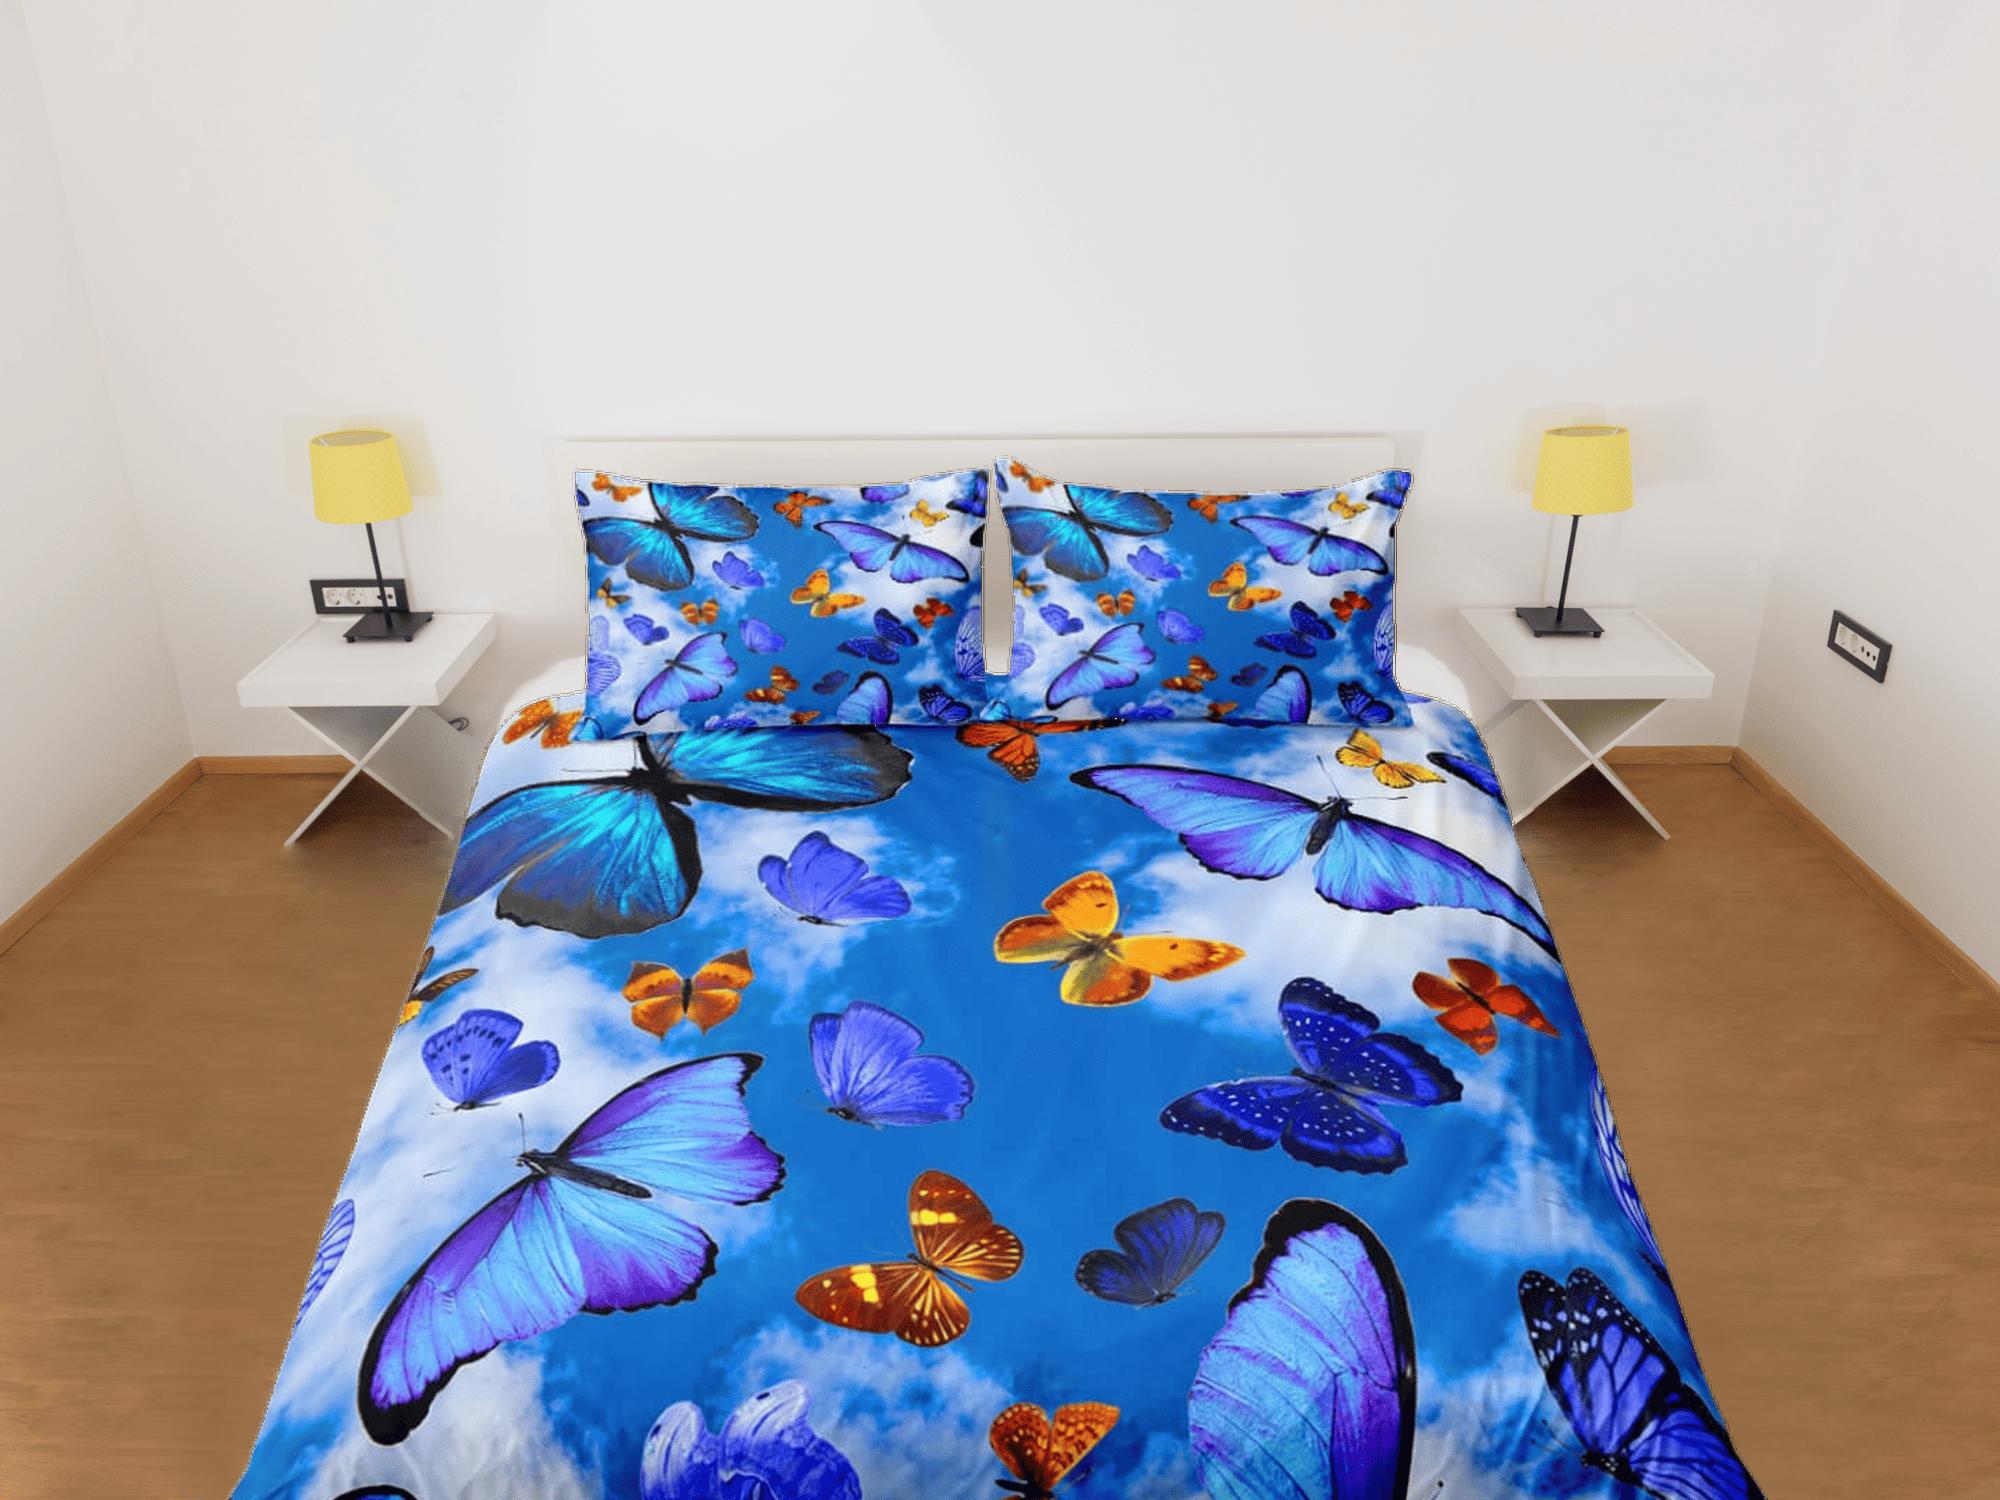 daintyduvet Sky blue butterfly bedding boho chic aesthetic duvet cover, dorm bedding full size adult duvet king queen twin, nursery toddler bedding